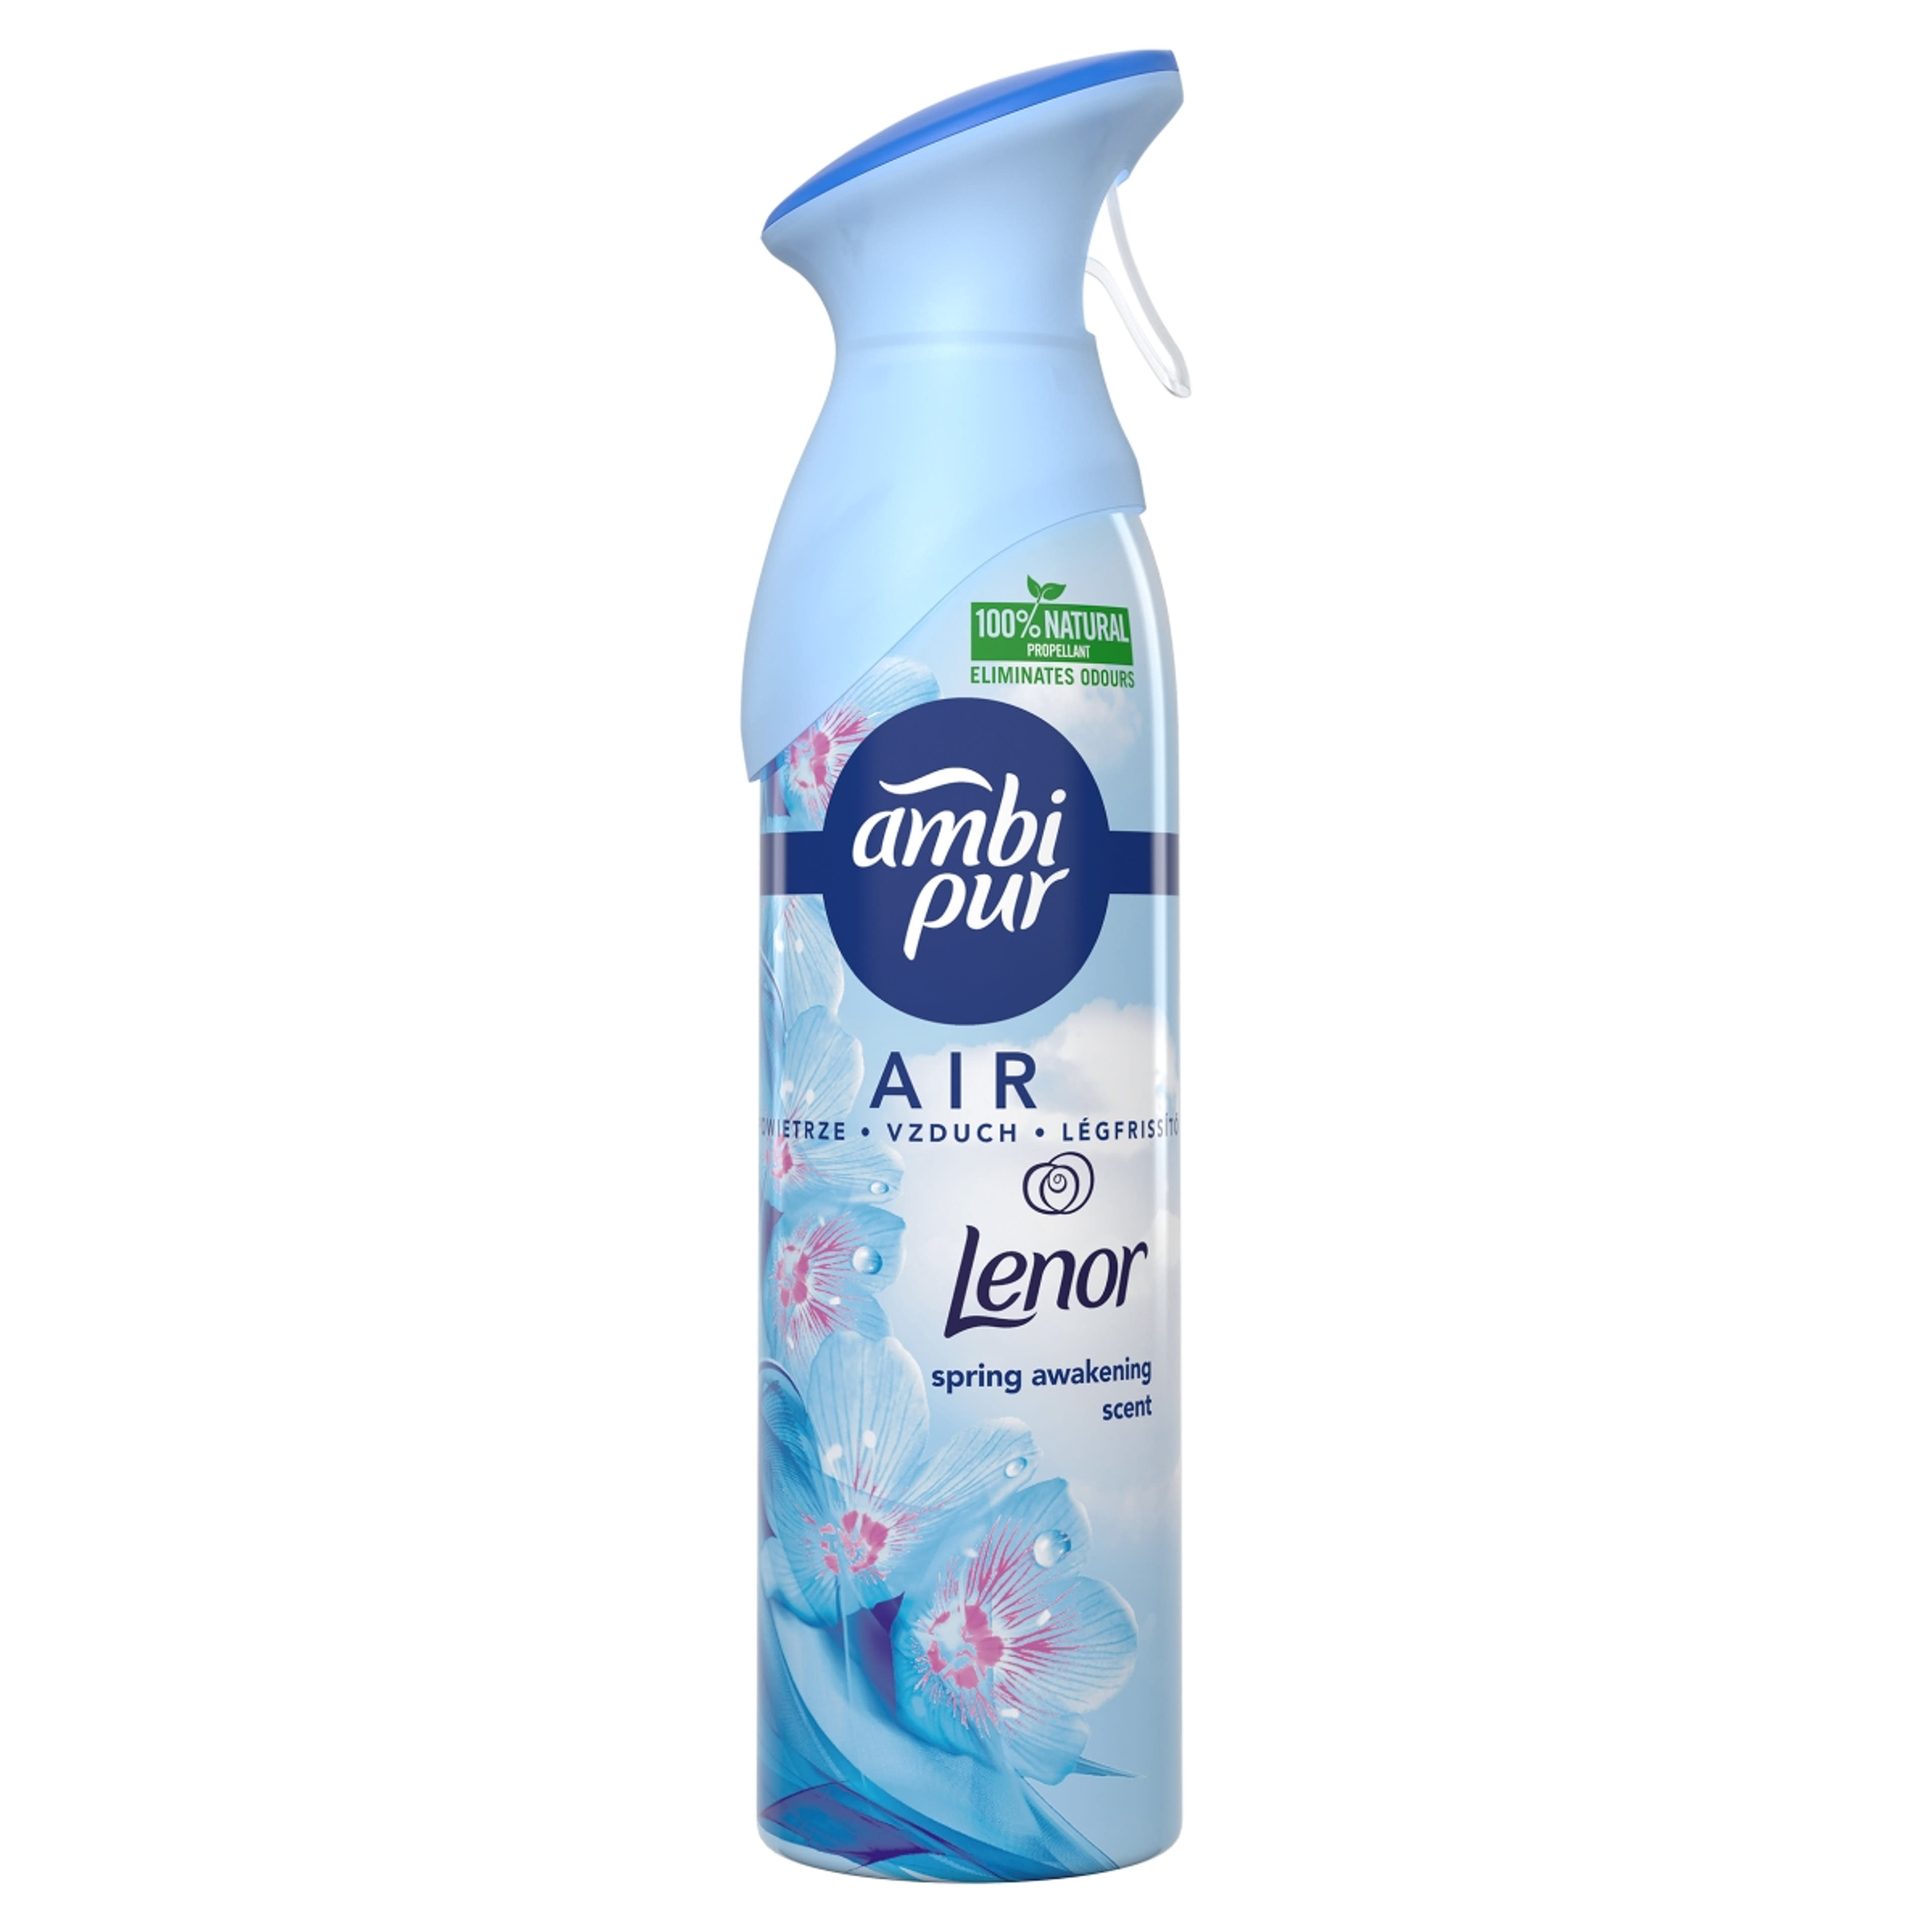 Ambi Pur Air Lenor Spray - 300 ml